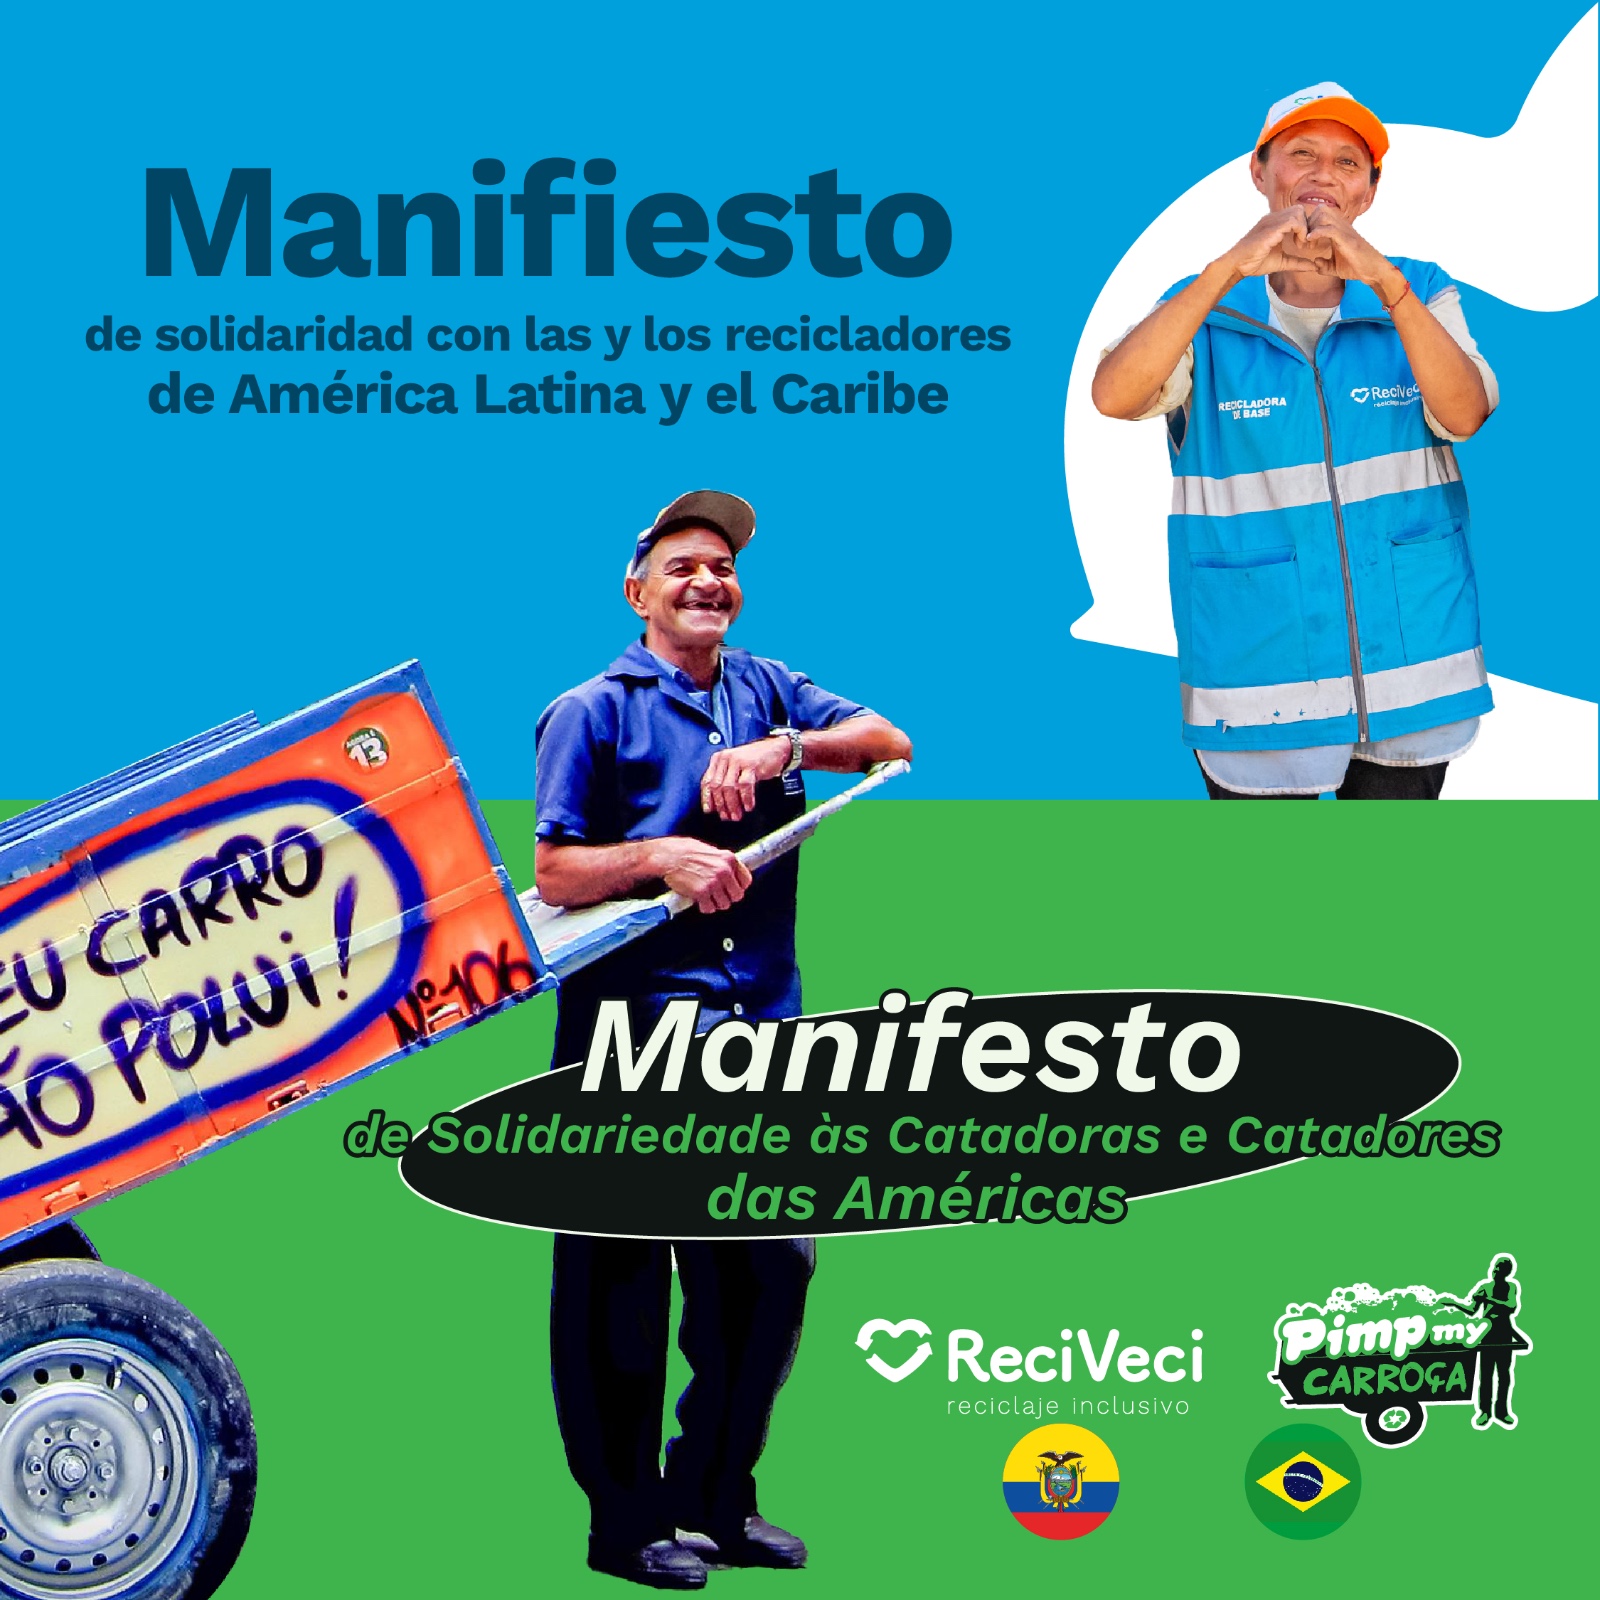 Organizações da sociedade civil que trabalham com catadores, ReciVeci, do Equador, e Pimp My Carroça, do Brasil, publicam manifesto em apoio aos trabalhadores e trabalhadoras da reciclagem na América Latina e no Caribe.